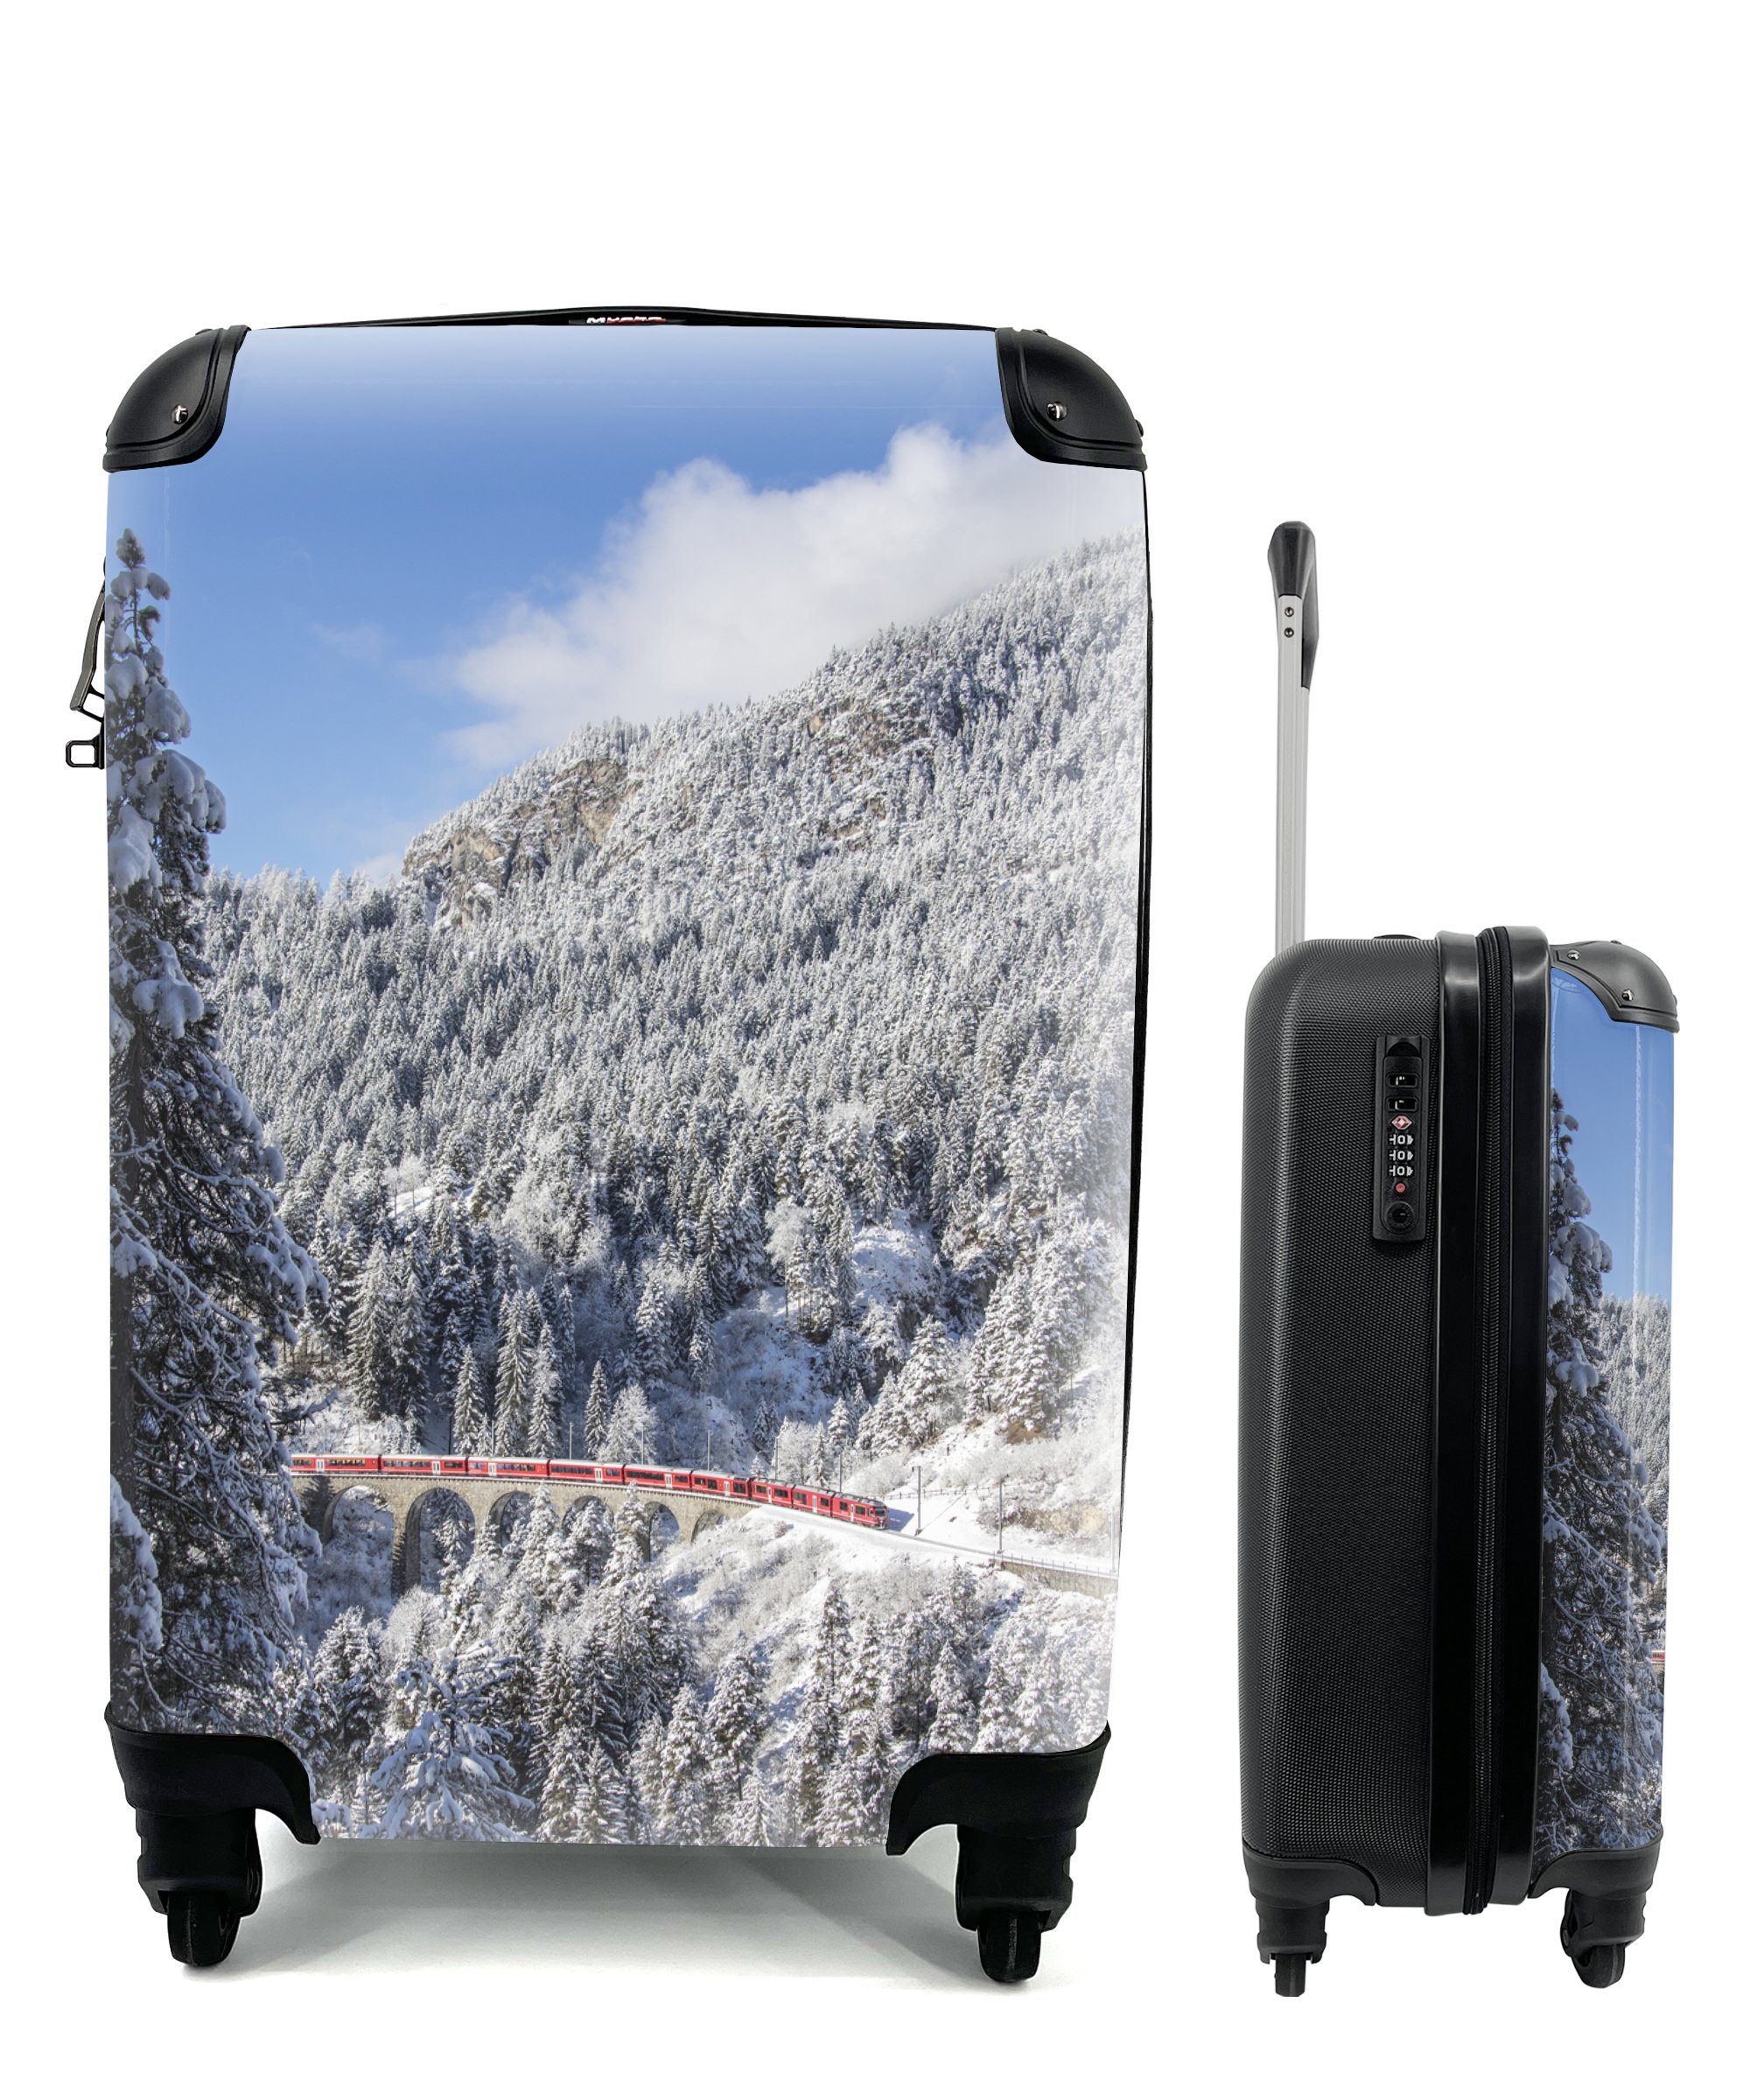 Schweizer Koffer online kaufen | OTTO